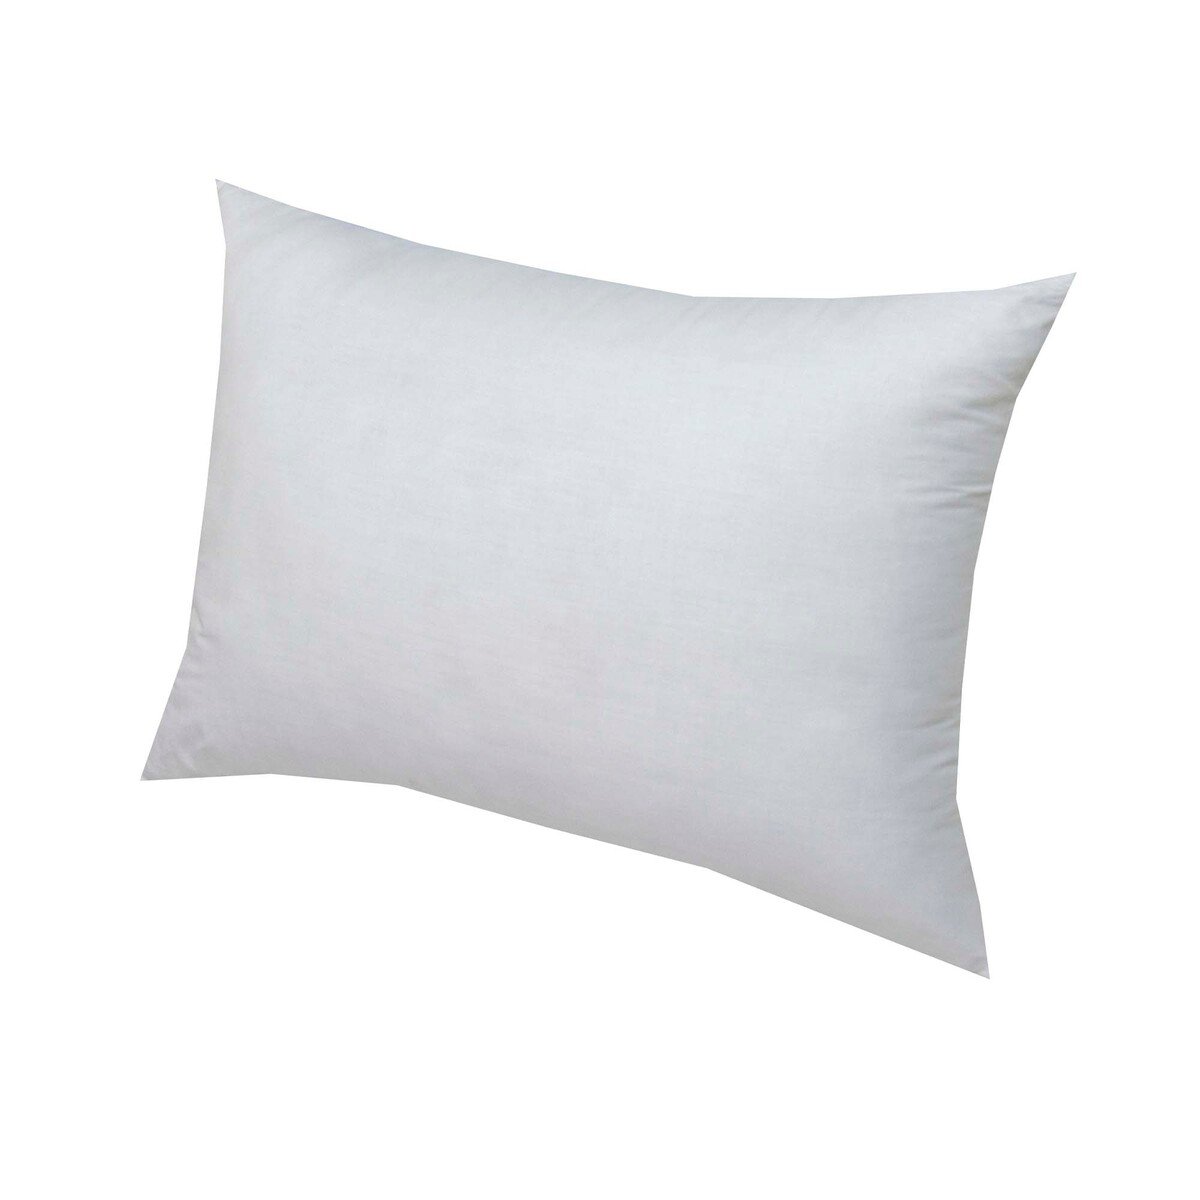 Design Plus Pillow King 50x80cm 1.1kg Assorted